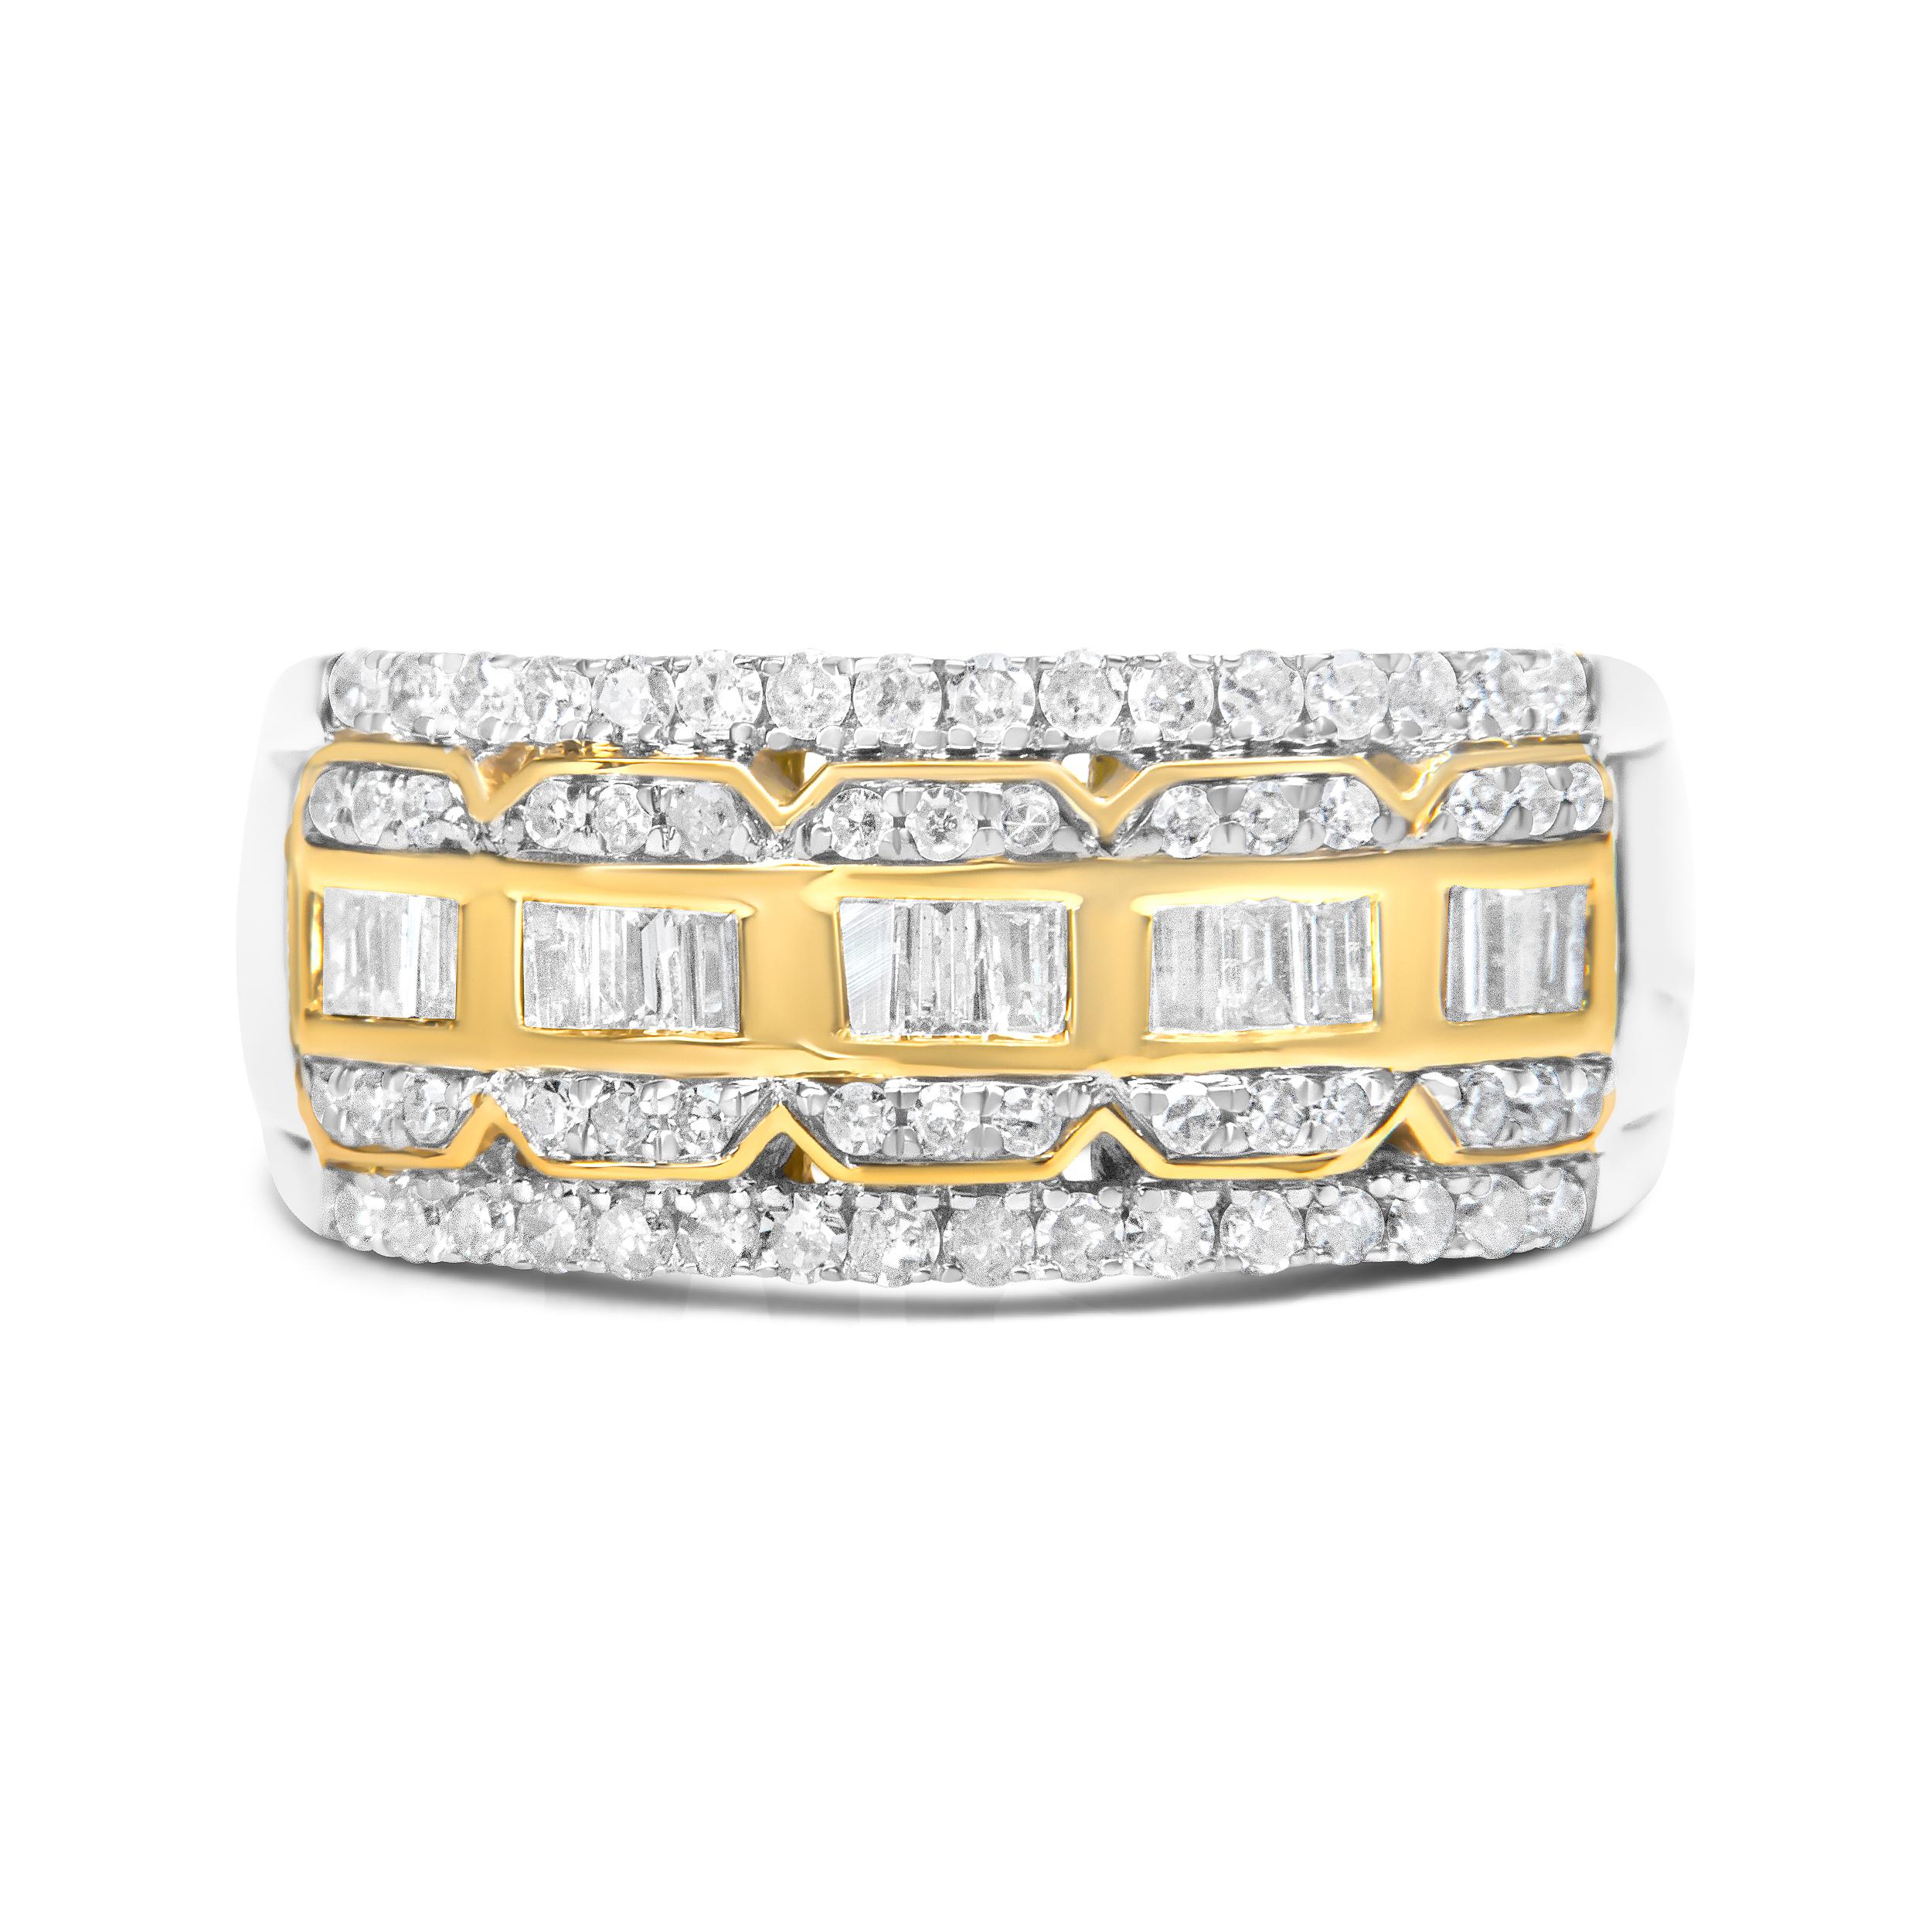 Setzen Sie ein Zeichen mit diesem exquisiten, vom Art déco inspirierten Ring. Hergestellt in 10k Weiß- und Gelbgold, zeigt dieses Stück 1ct TDW von Diamanten. Eine Reihe von Diamanten im Baguetteschliff befindet sich in einer dekorativen Einfassung